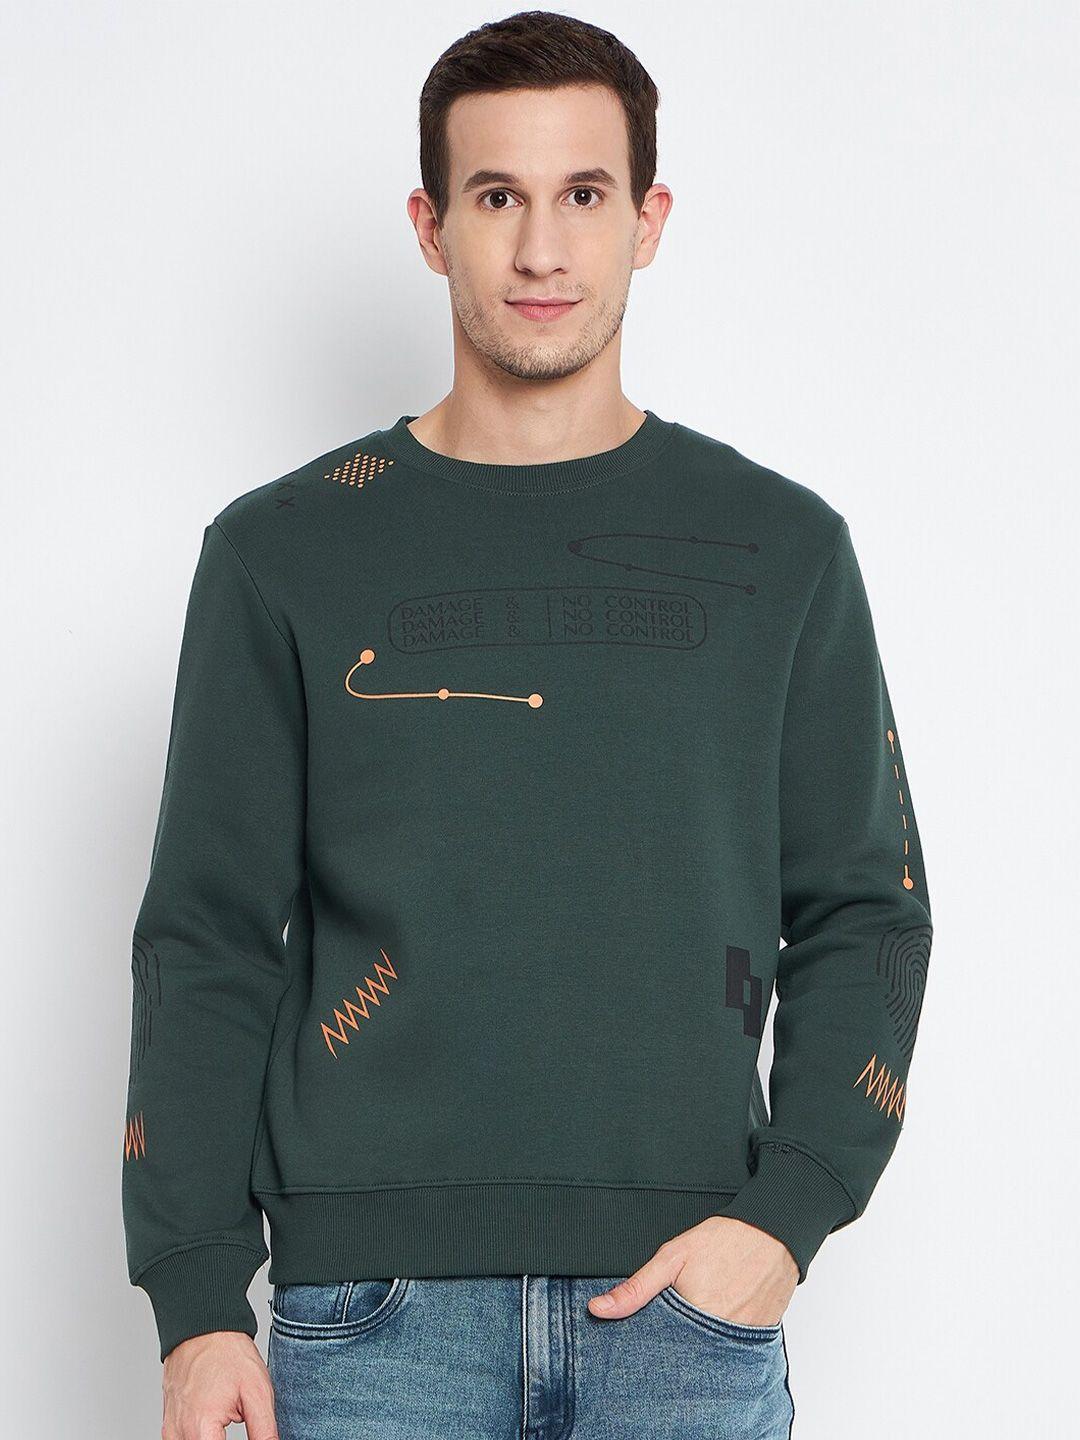 camla-graphic-print-round-neck-cotton-pullover-sweatshirt